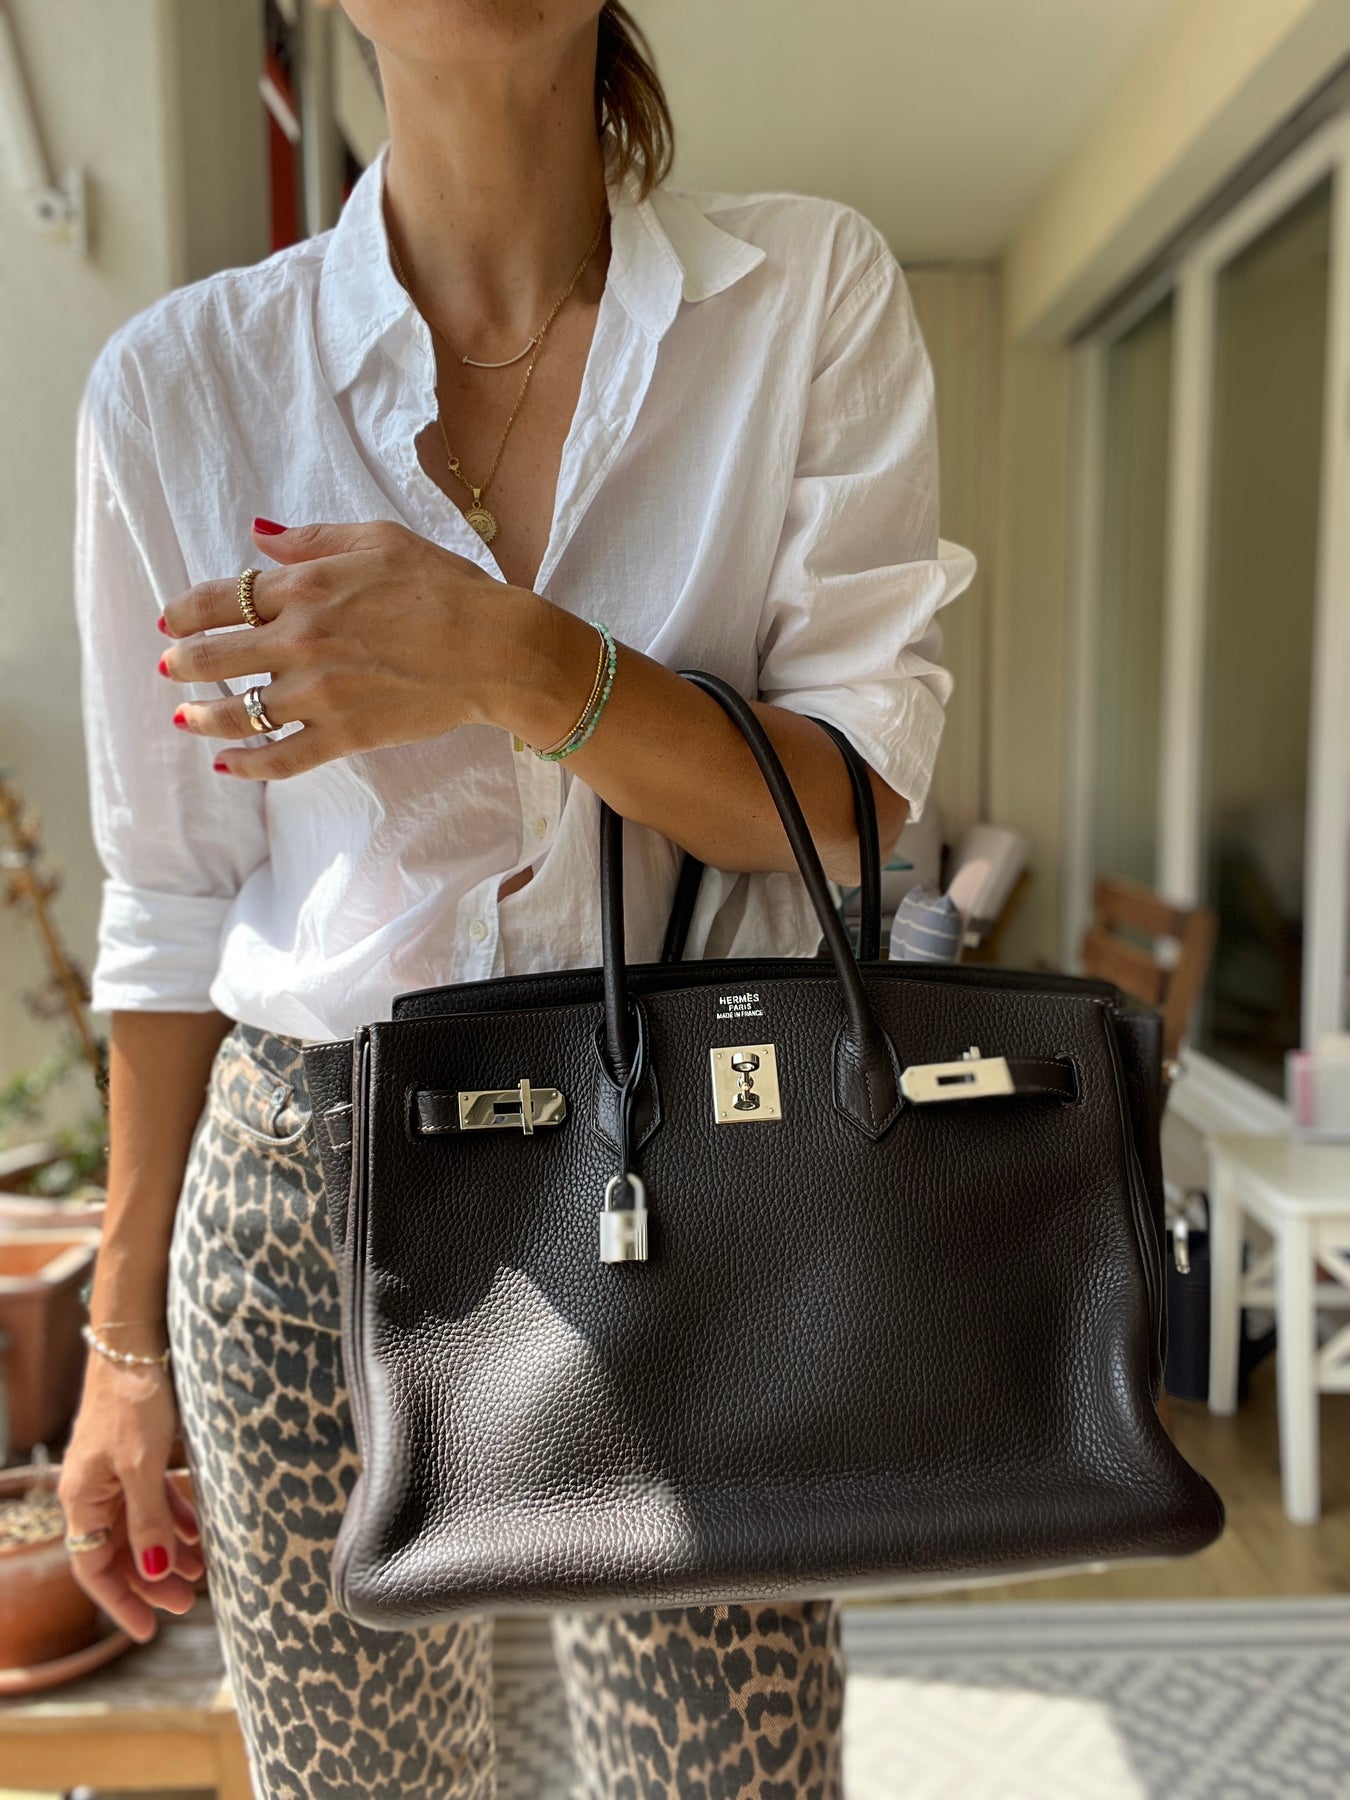 Hermes Birkin 35 Etoupe Taurillon Clemence GHW Handbag 2014